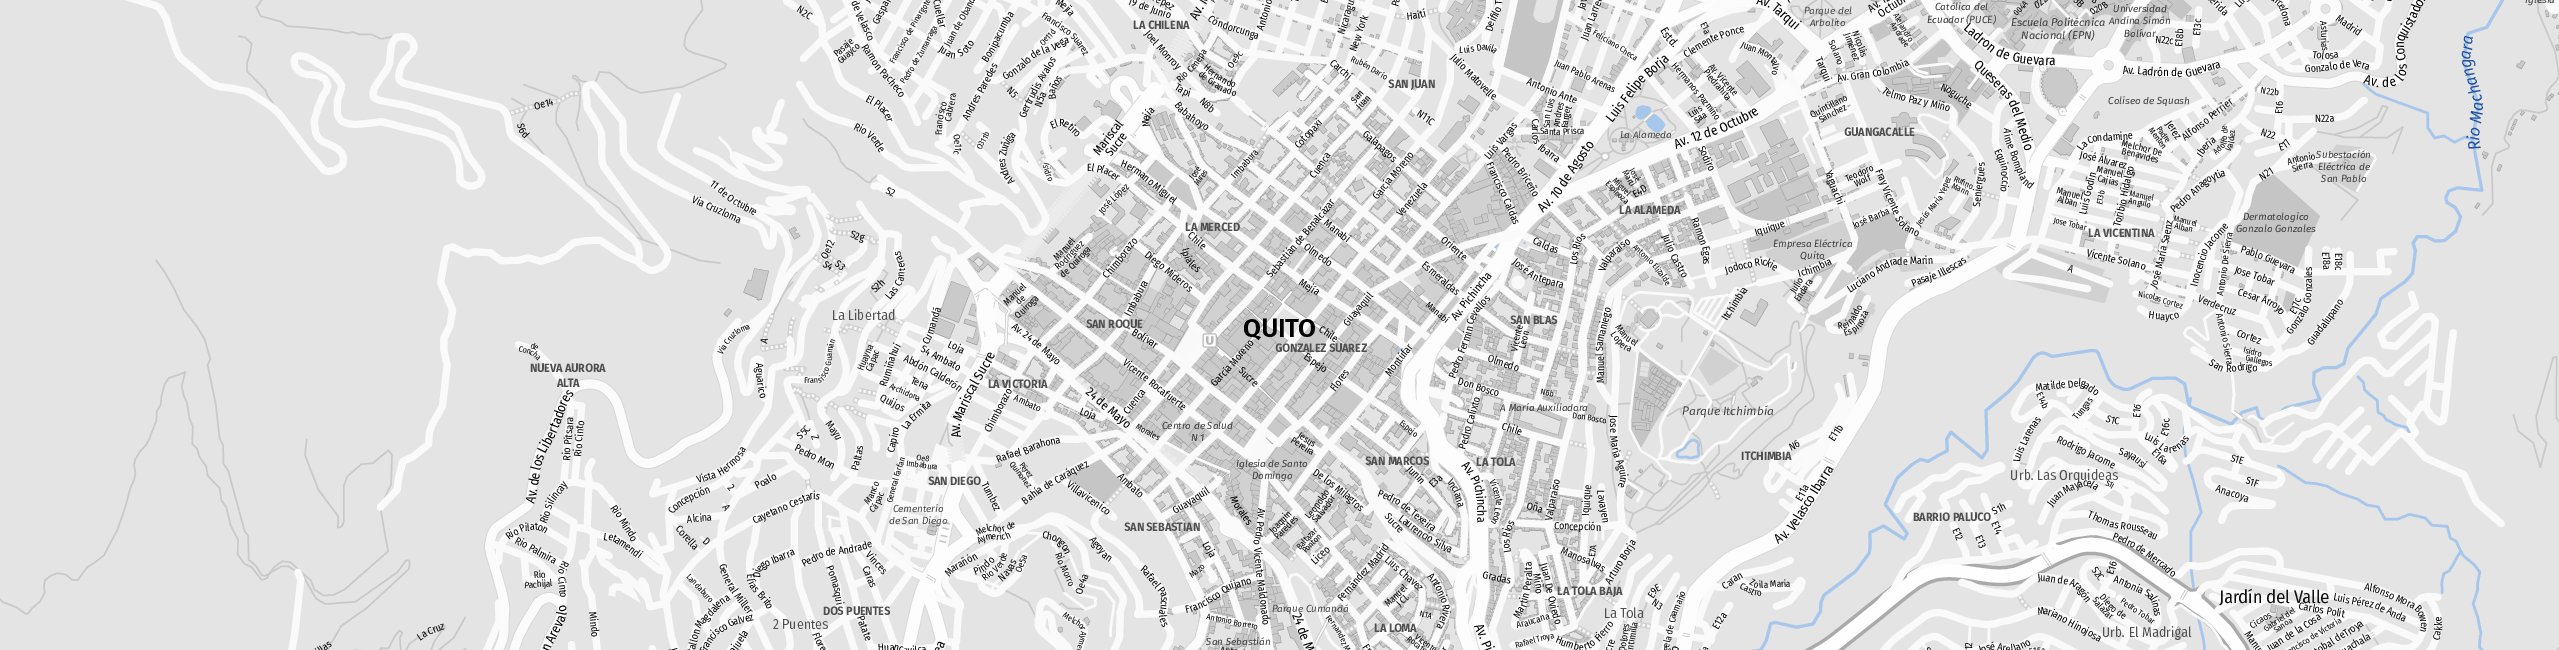 Stadtplan Quito zum Downloaden.